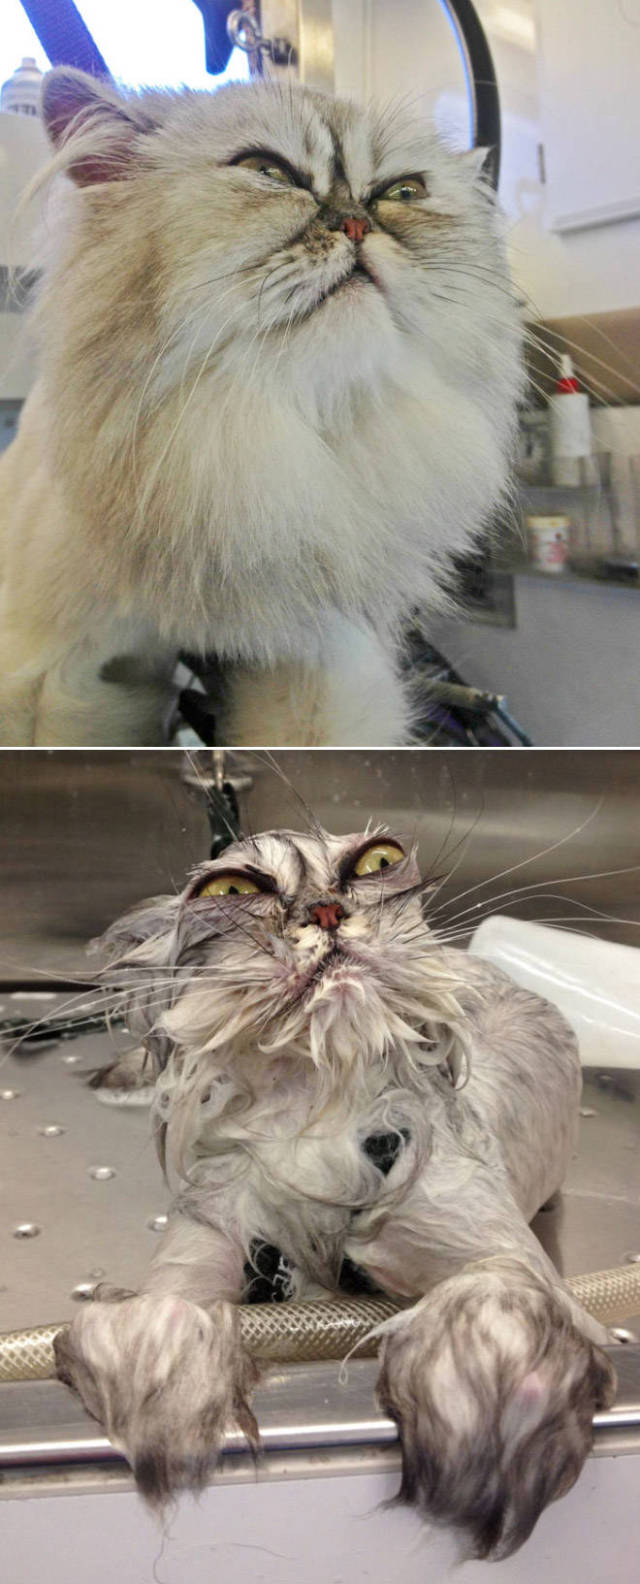 صور مضحكه لقطط قبل و بعد الاستحمام